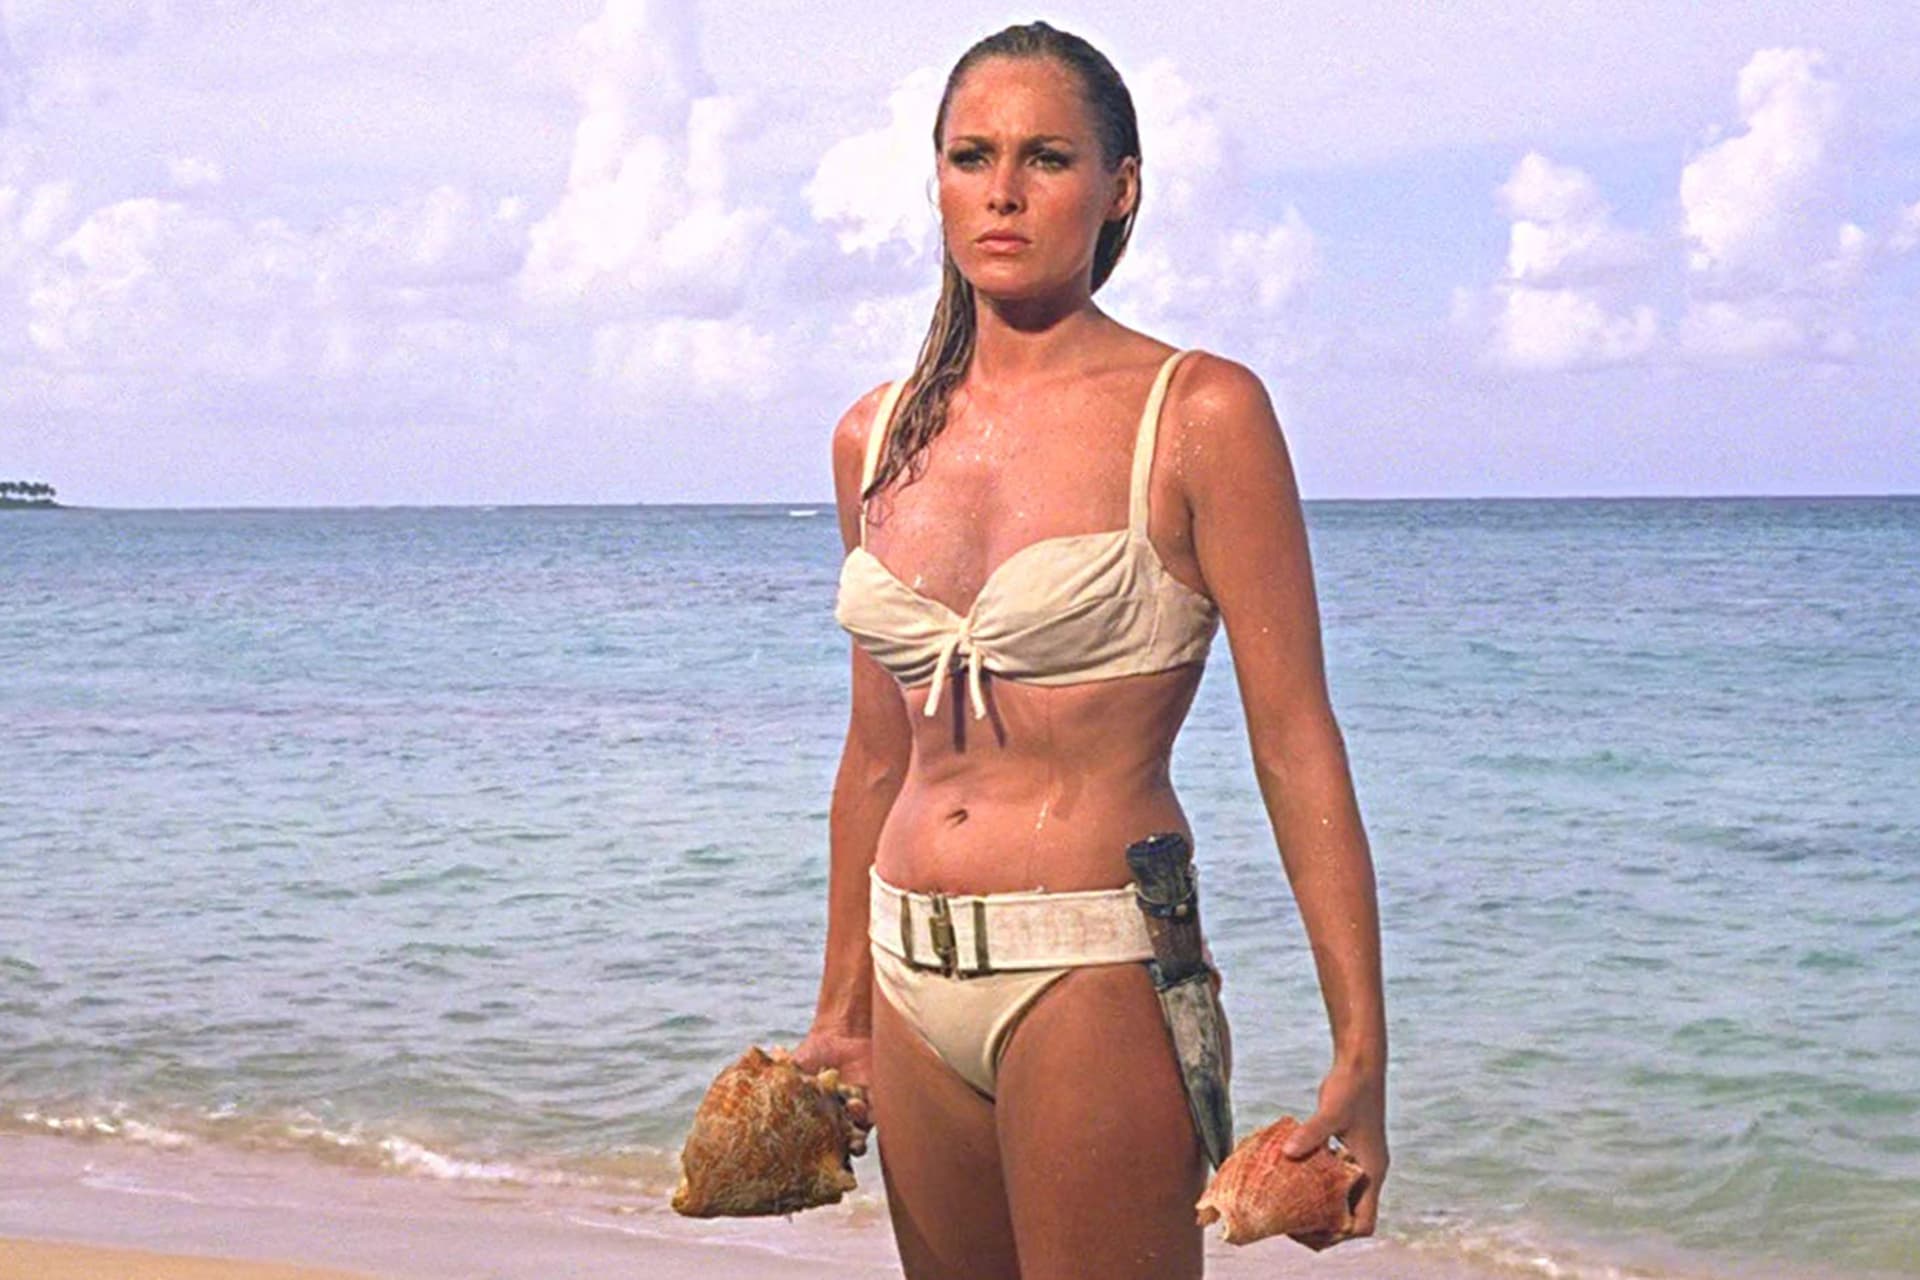 Krásných žen se kolem agenta 007 točila spousta, ale první bondgirl je jen jedna, Ursula Anders.